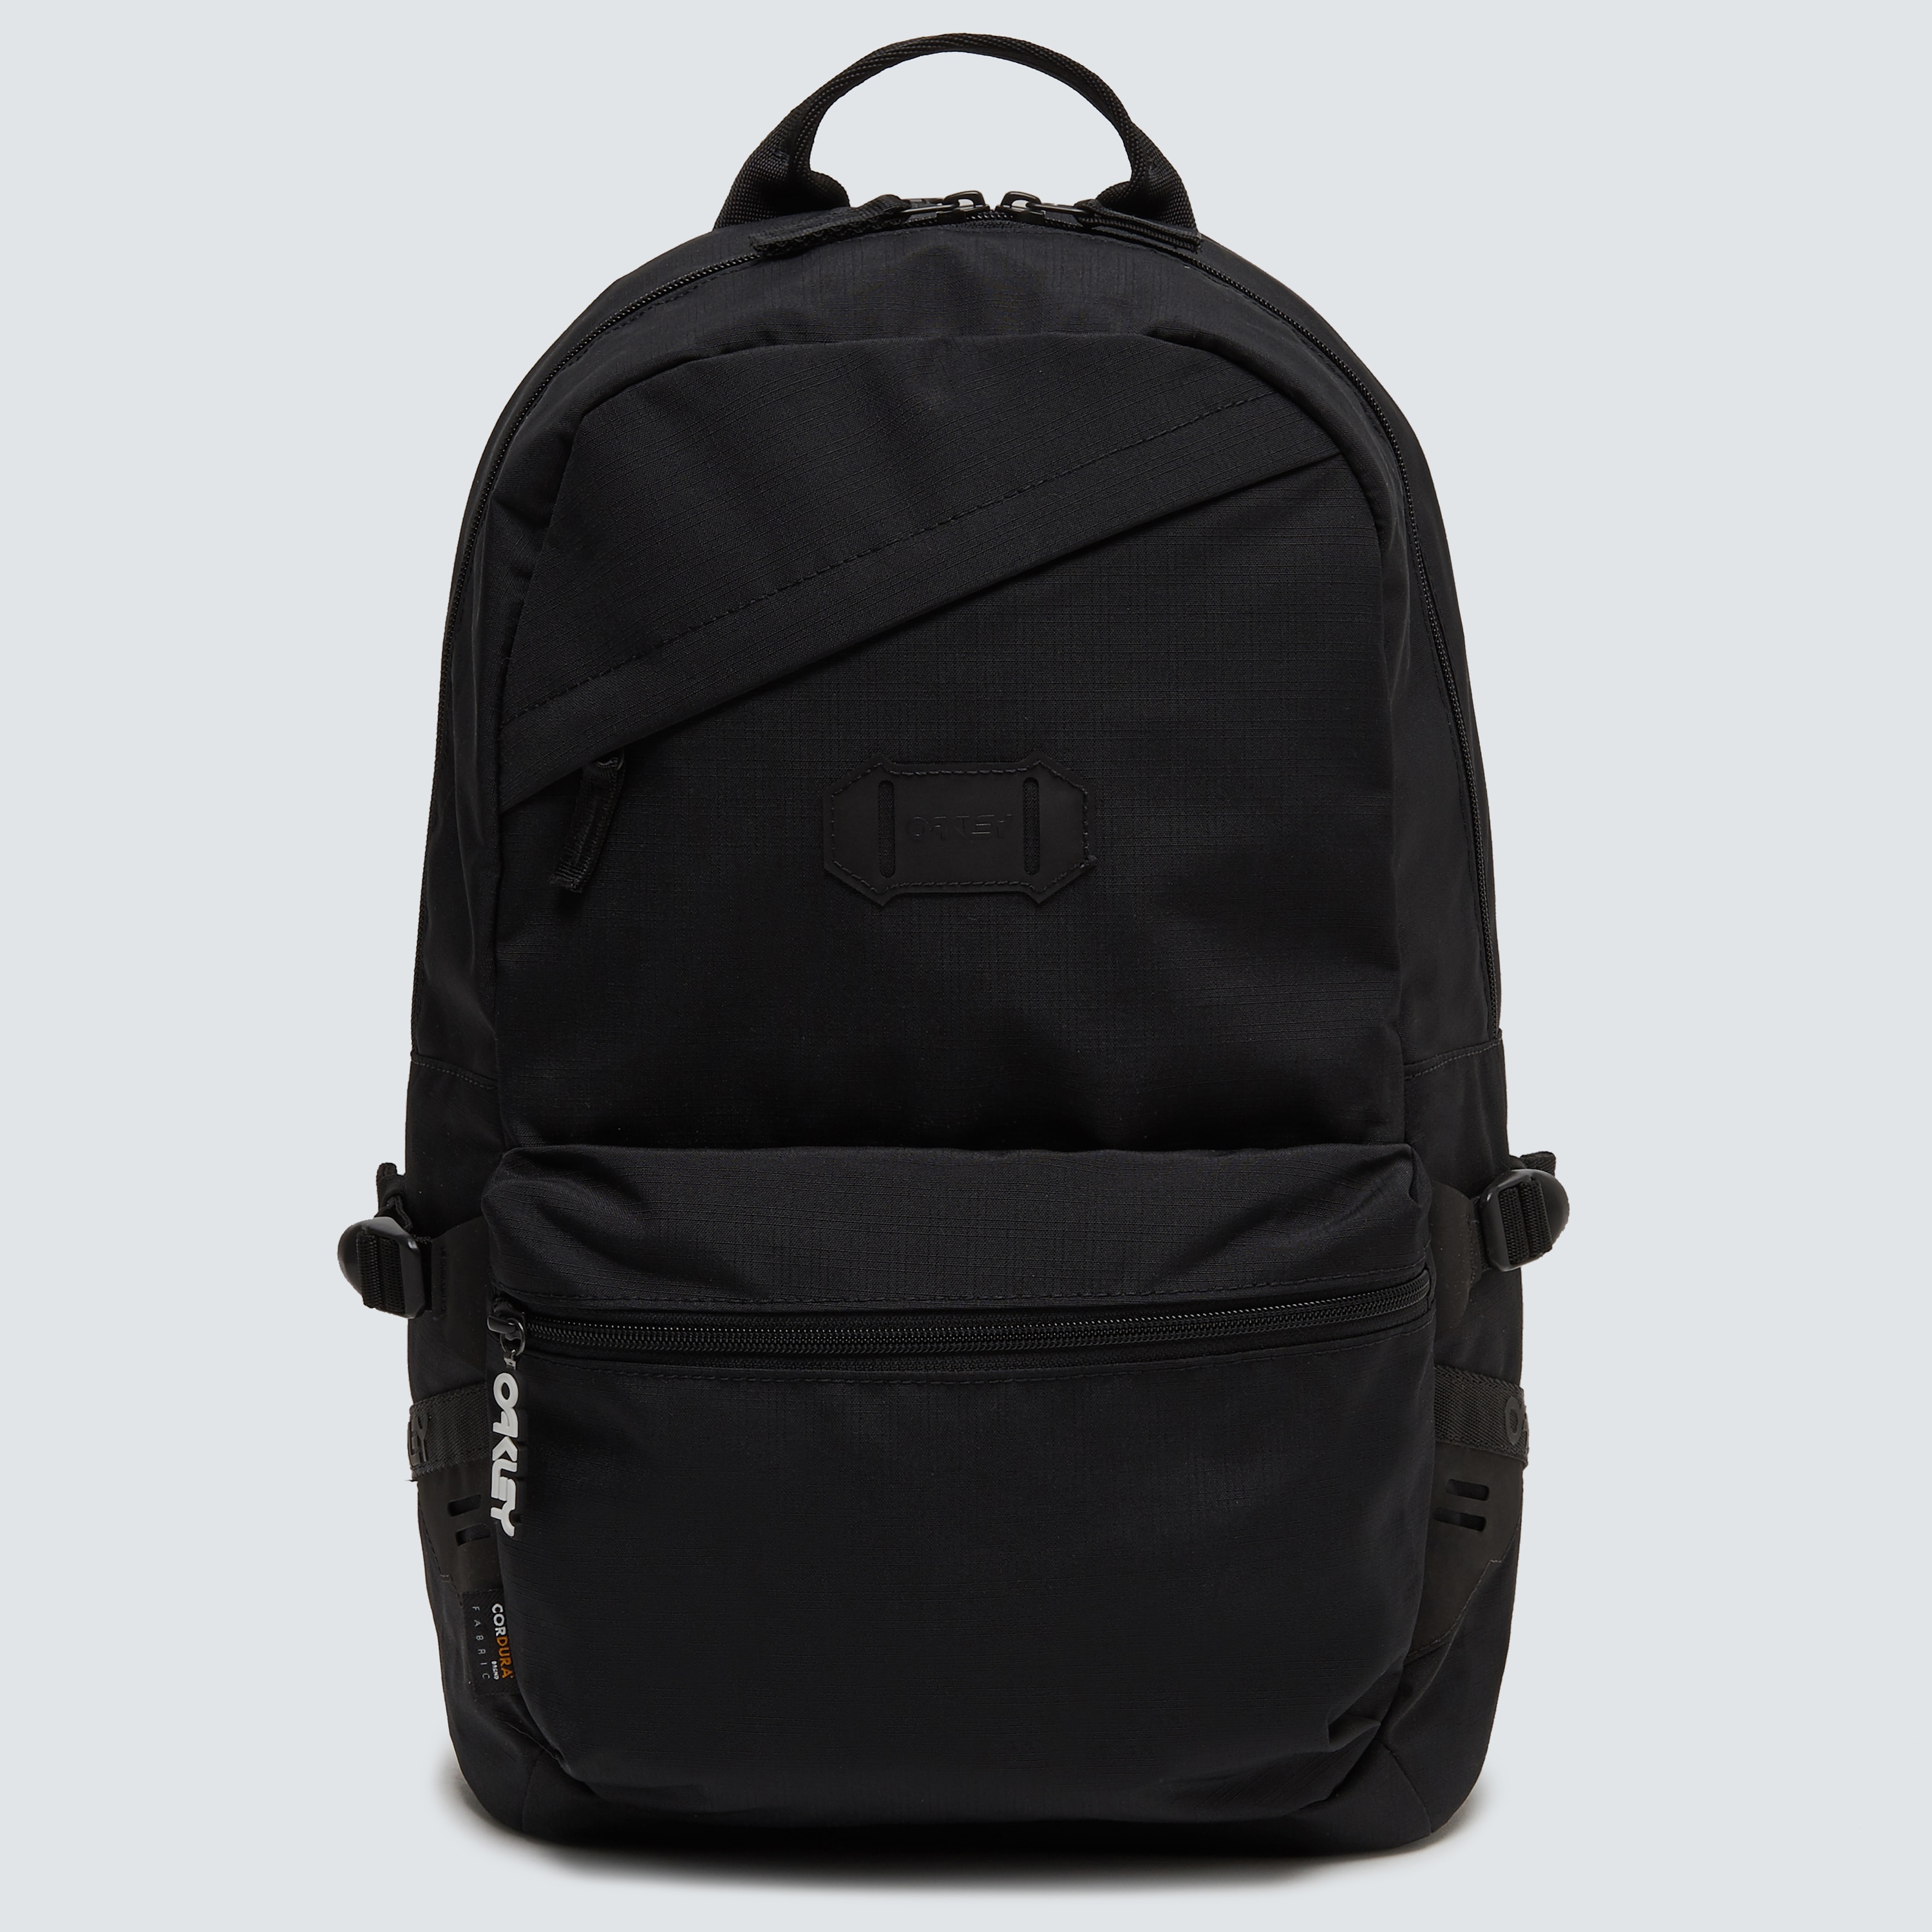 Oakley Street Backpack 2.0 - Blackout 